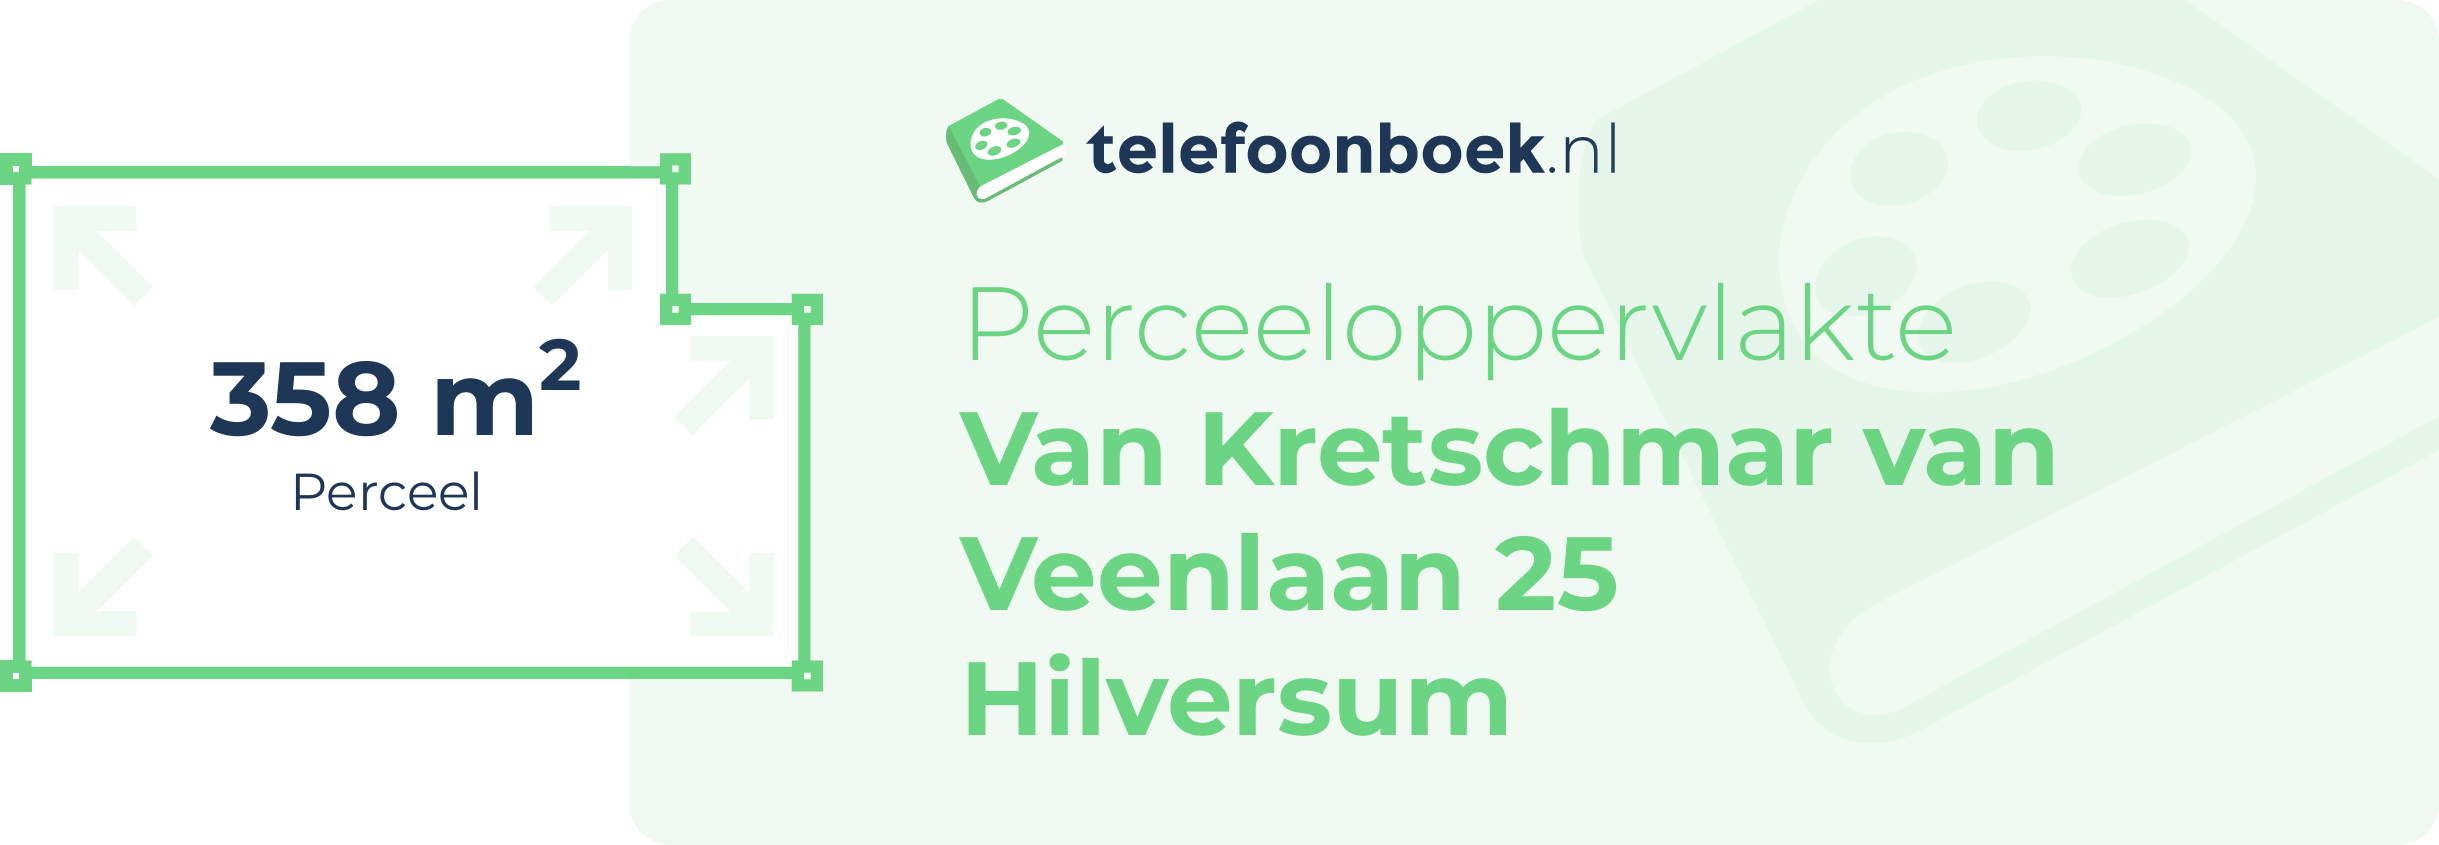 Perceeloppervlakte Van Kretschmar Van Veenlaan 25 Hilversum